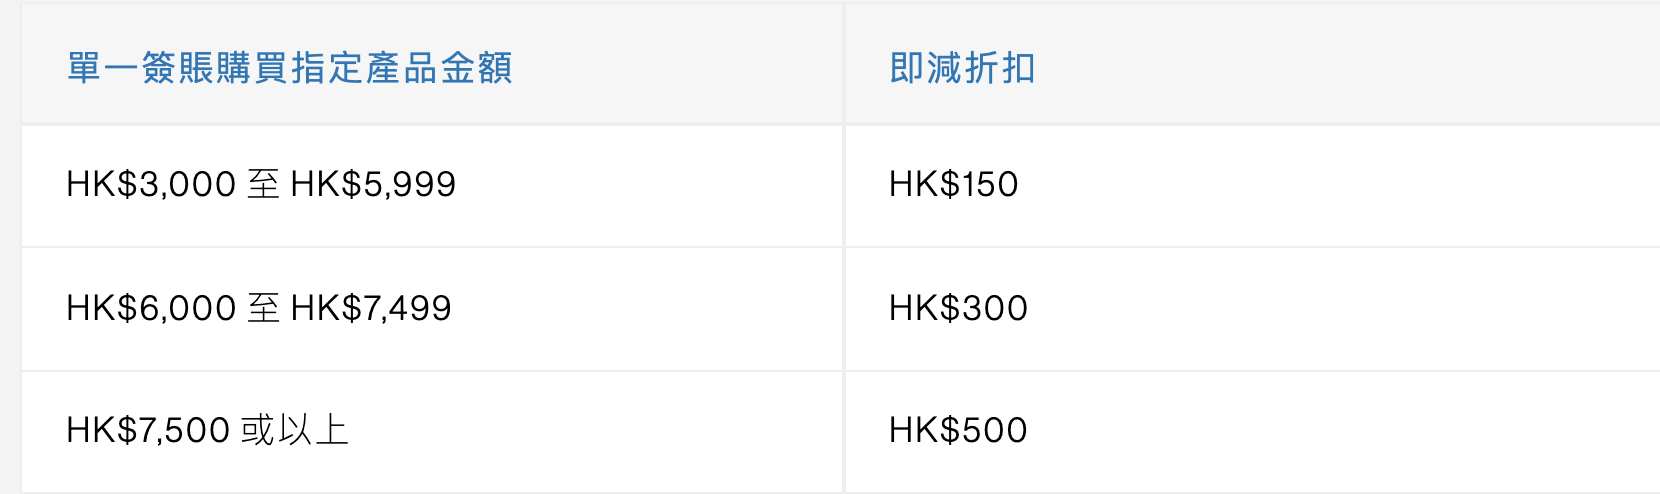 【1010/csl渣打優惠】憑渣打信用卡於1010/csl專門店簽賬可享HK$500即時折扣及月費回贈